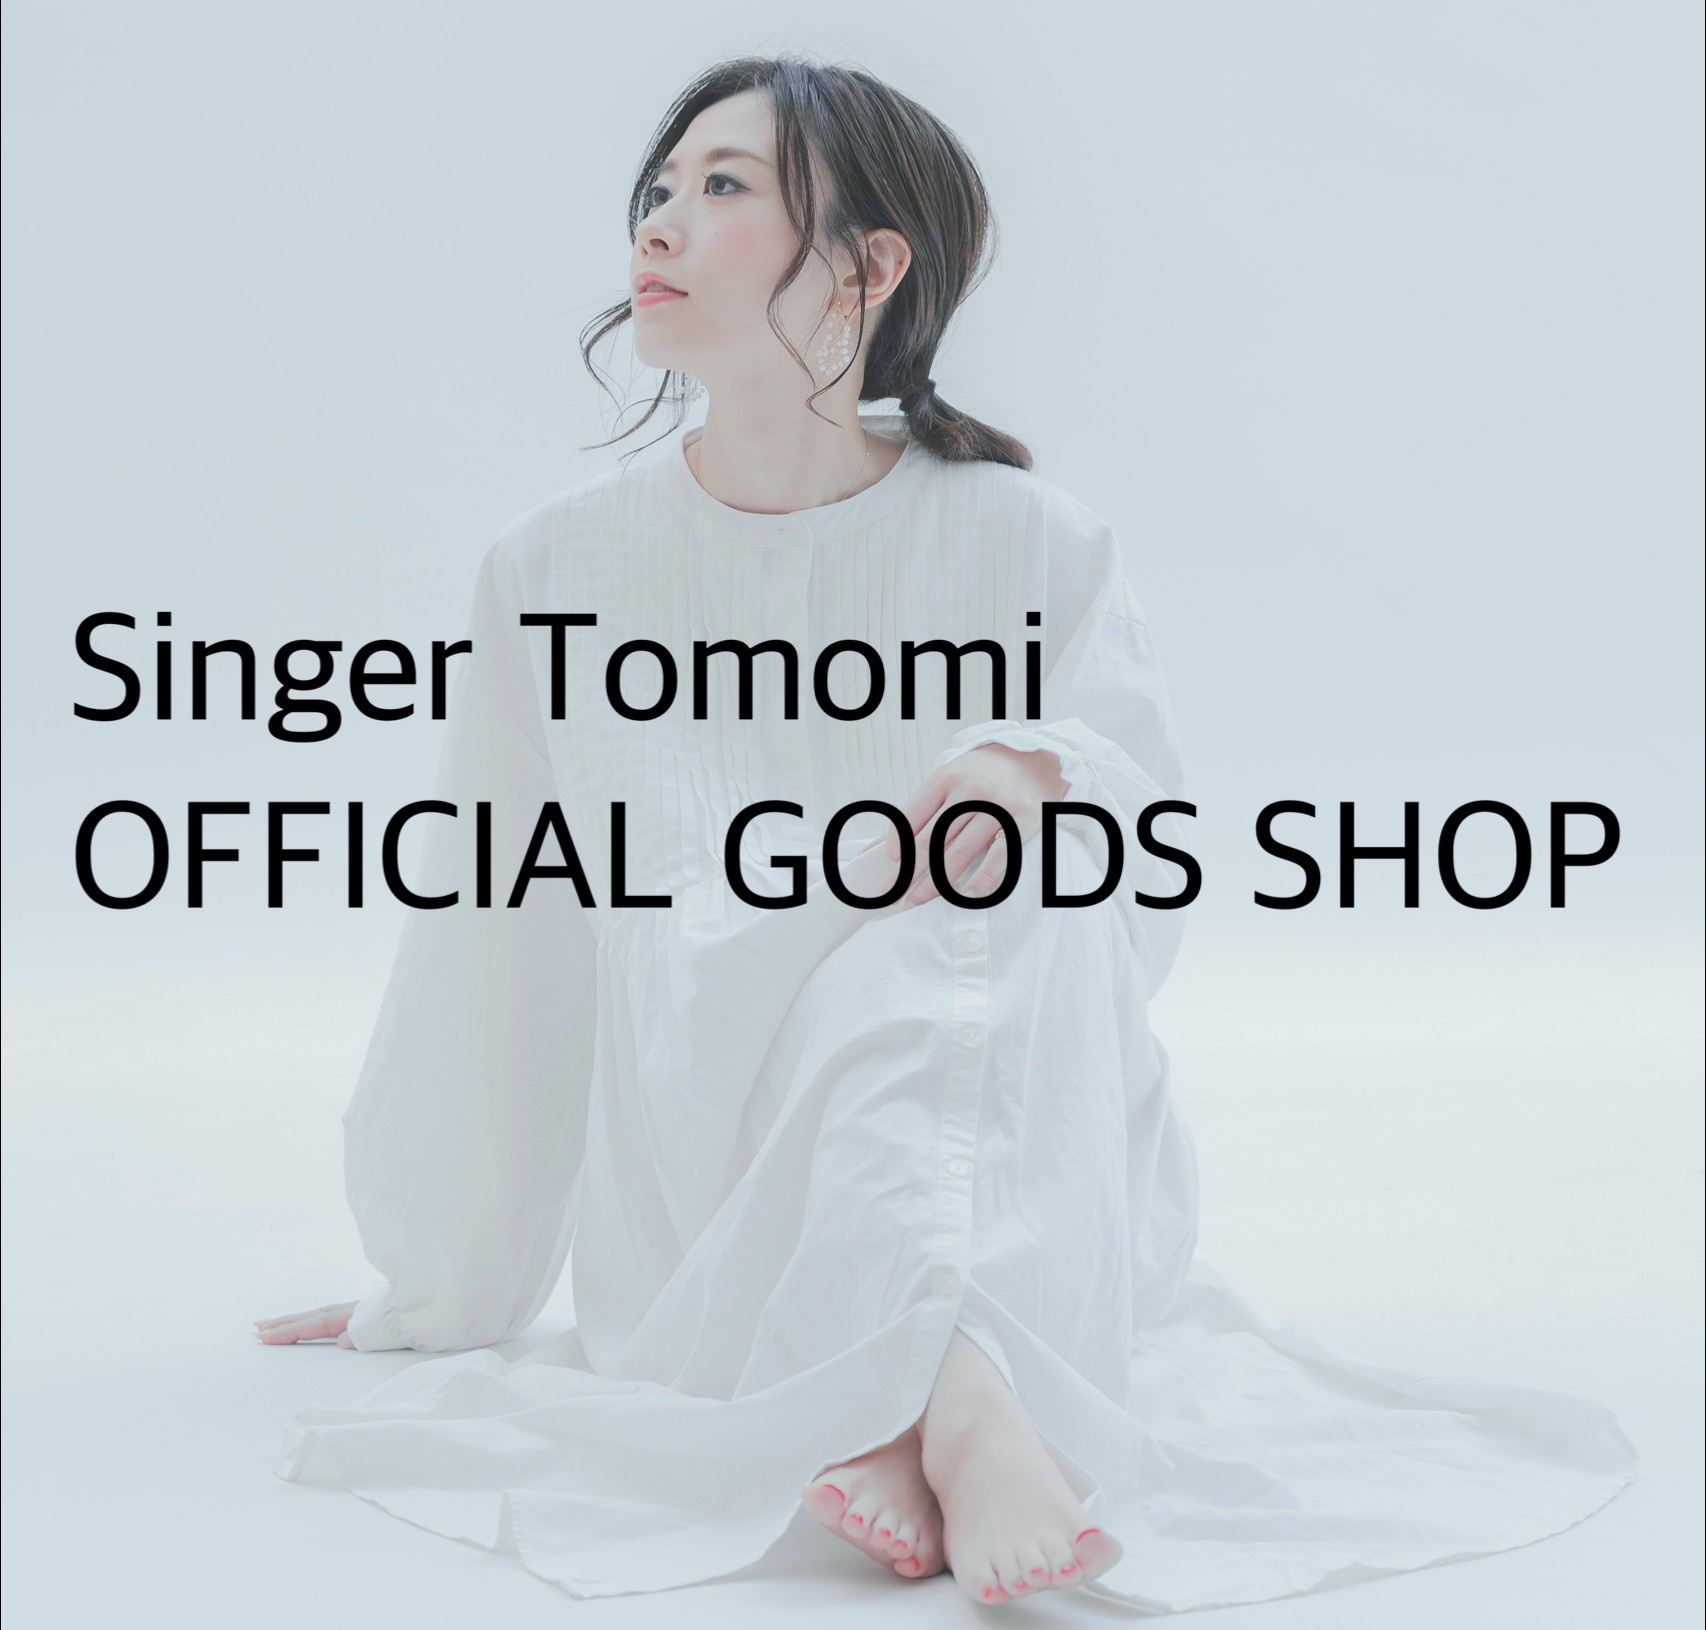 Singer Tomomi OFFICIAL GOODS SHOP